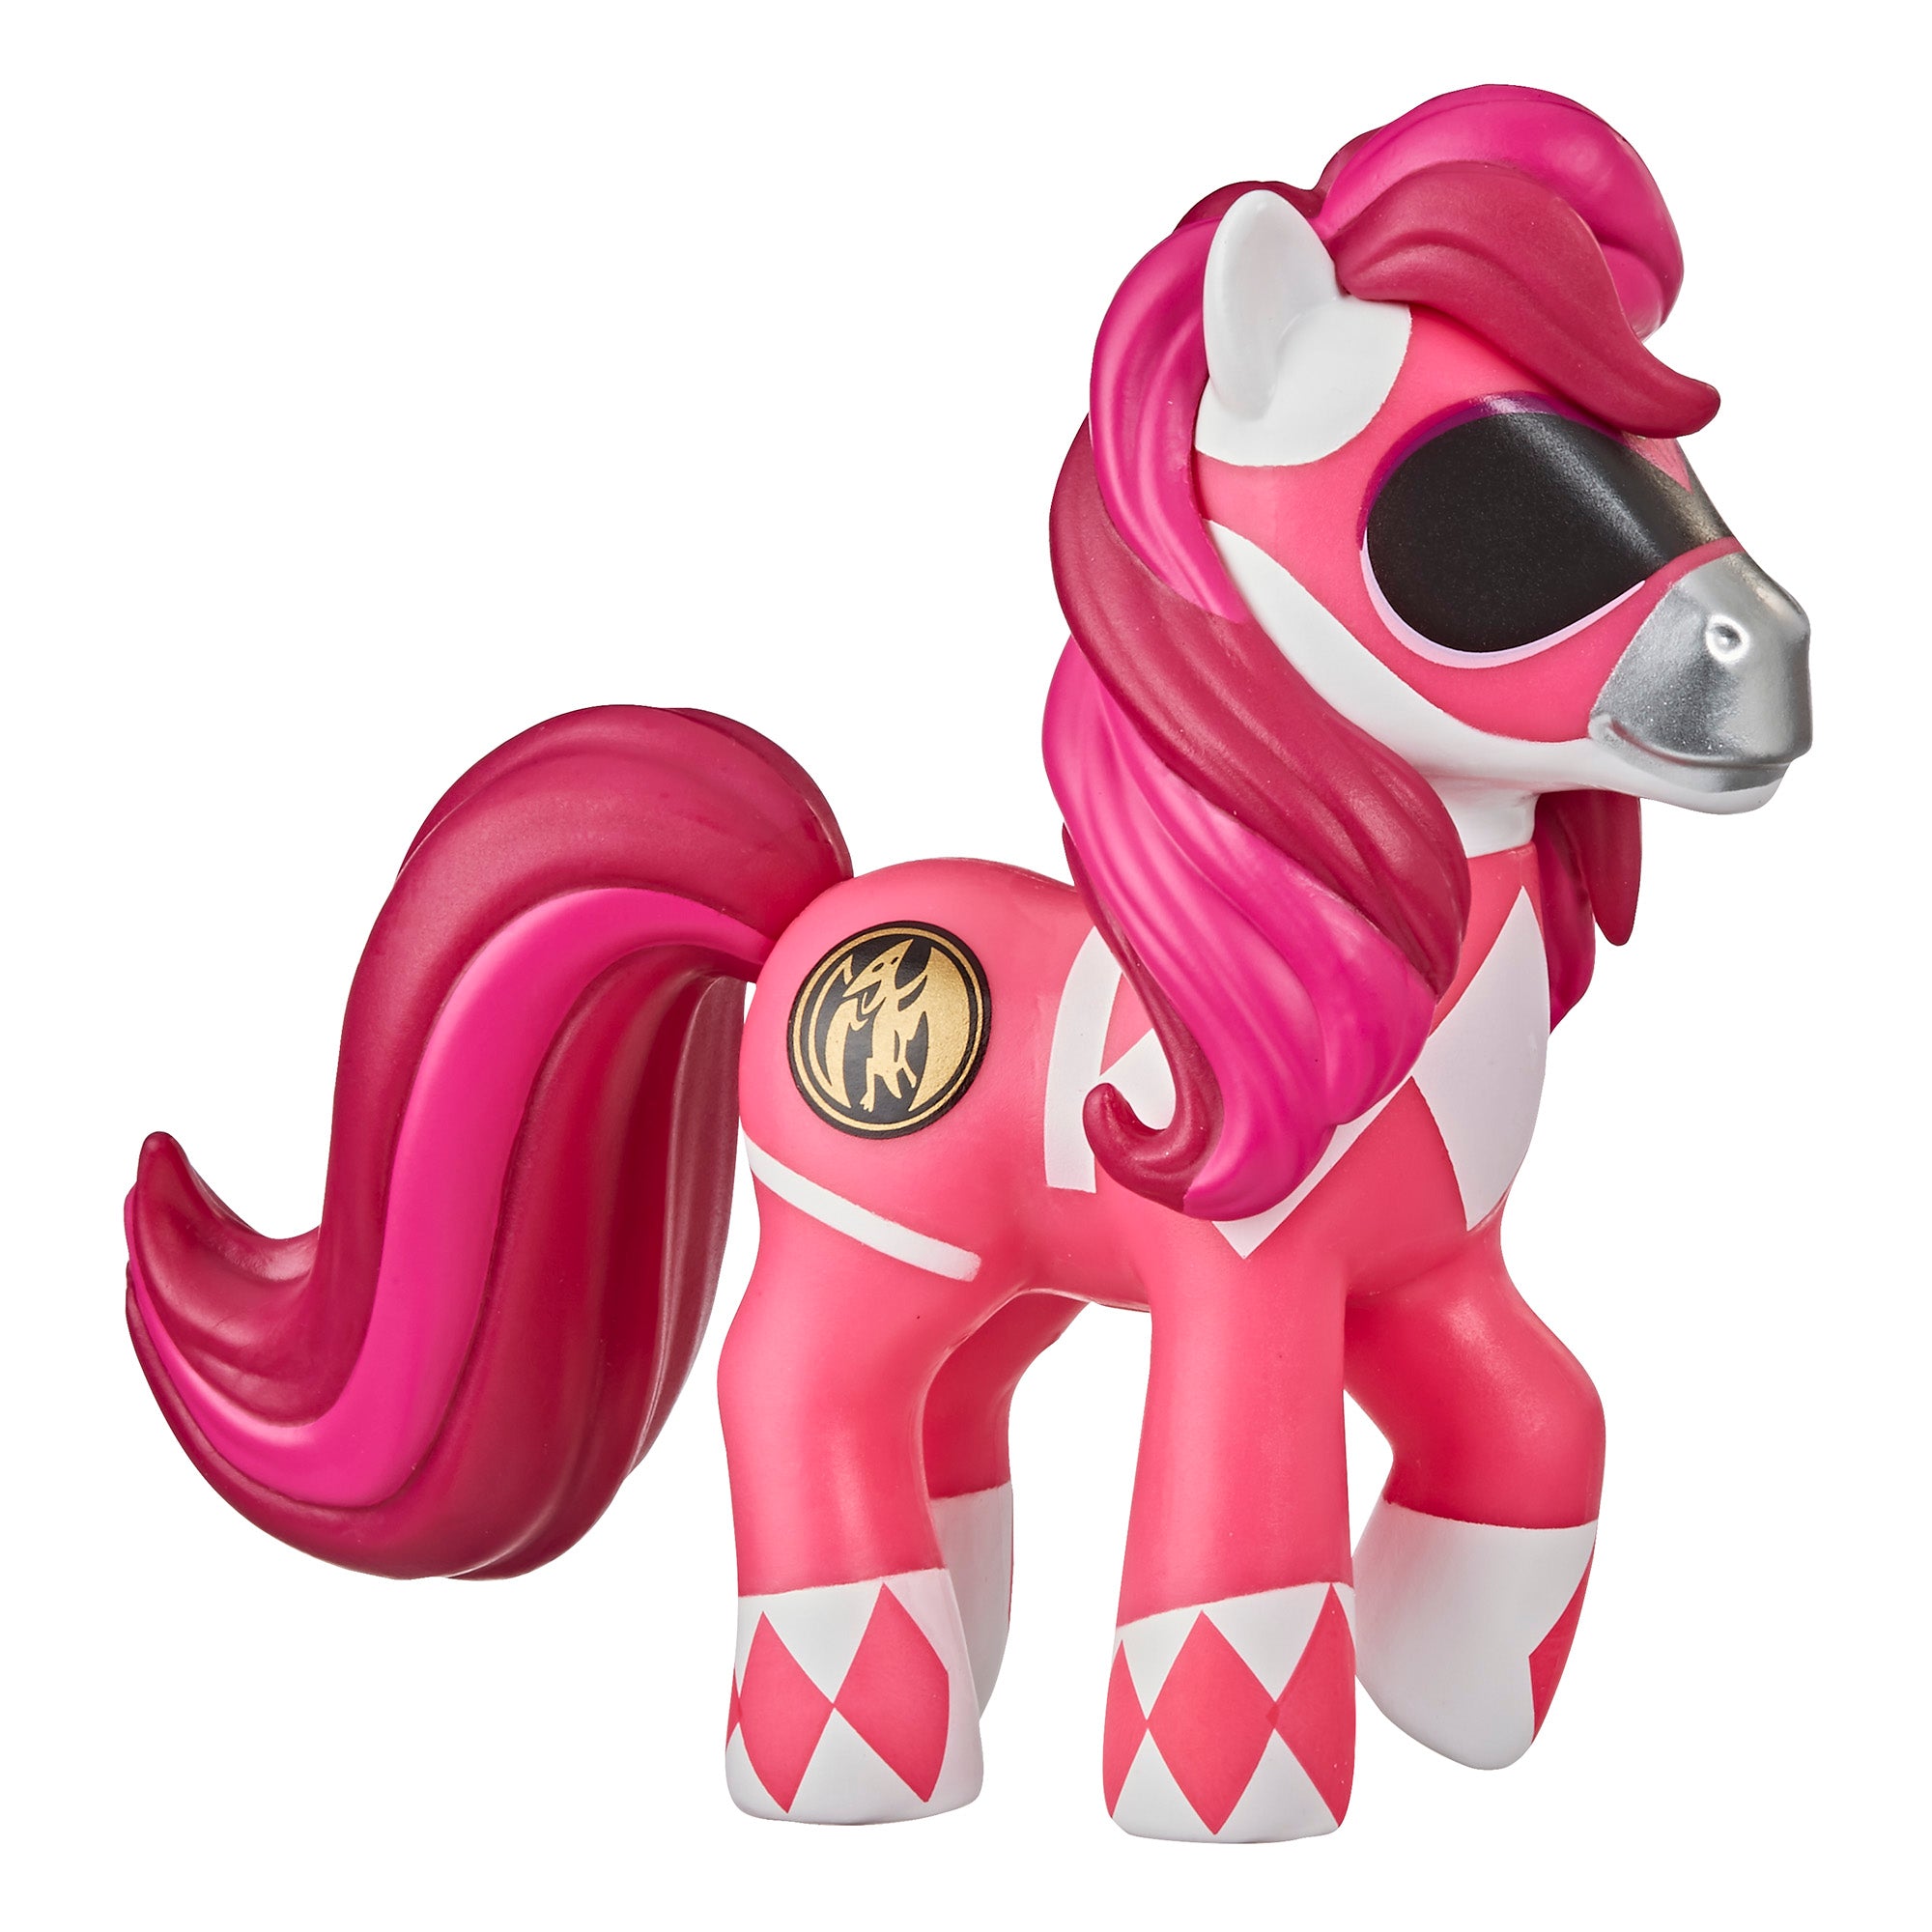 Pony 10. My little Pony Morphin Power Rangers. Могучие пони игрушки. Поняшки коллекционные. Хасбро пони рокерши.